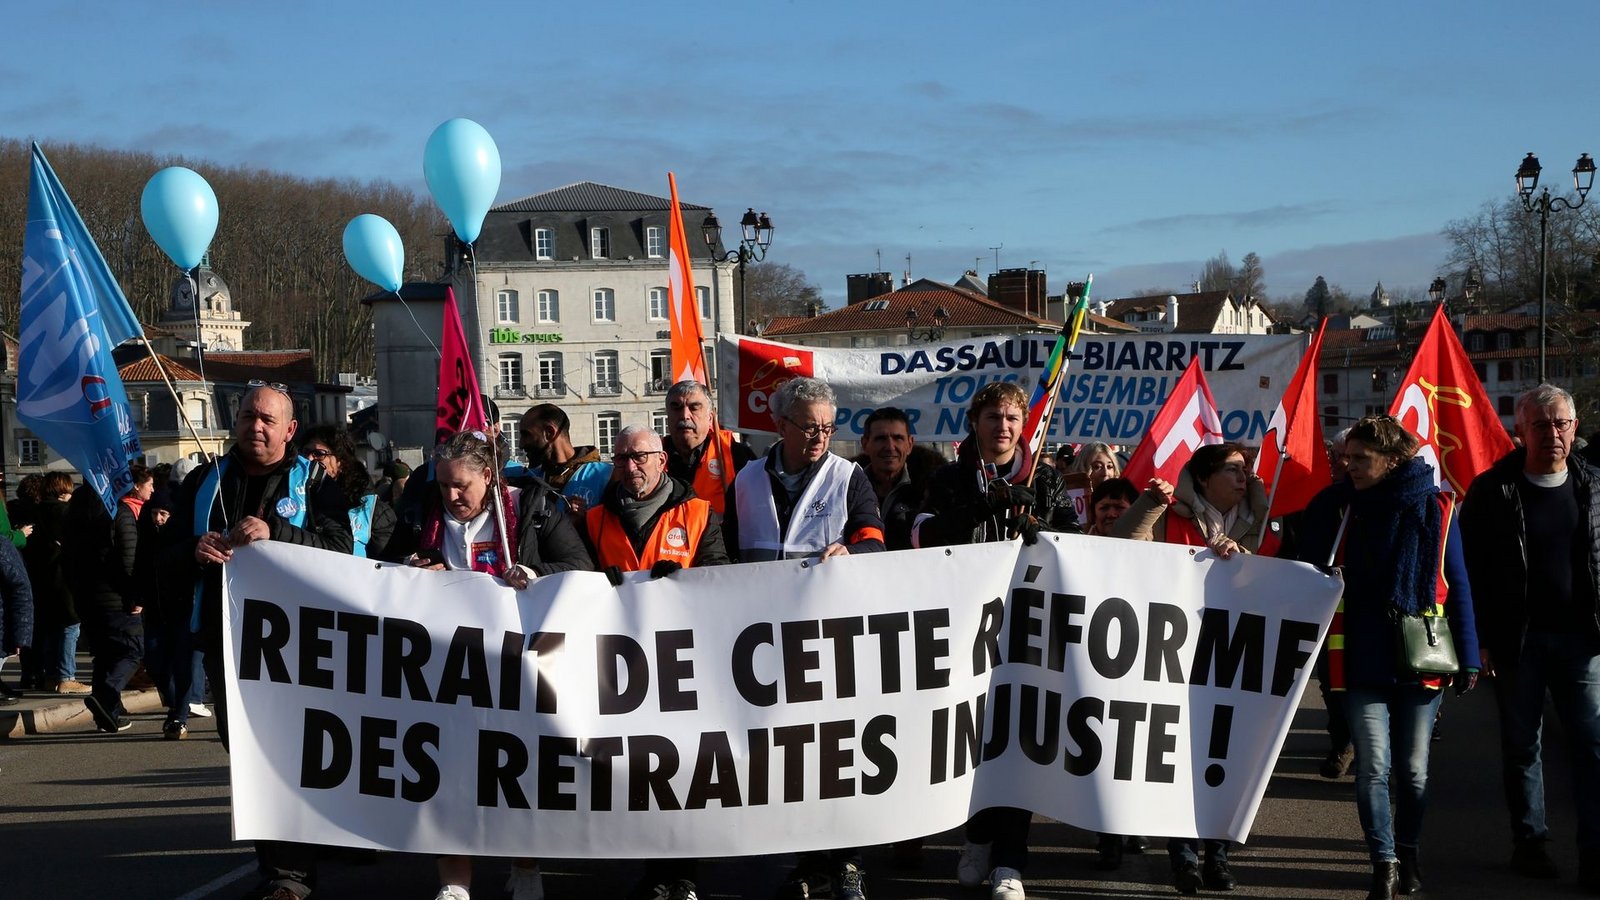 Demonstranten halten ein Transparent mit der Aufschrift "Rücknahme der ungerechten Rentenreform" während eines Protestmarsches in Bayonne.Foto: Robert Edme/AP/dpa